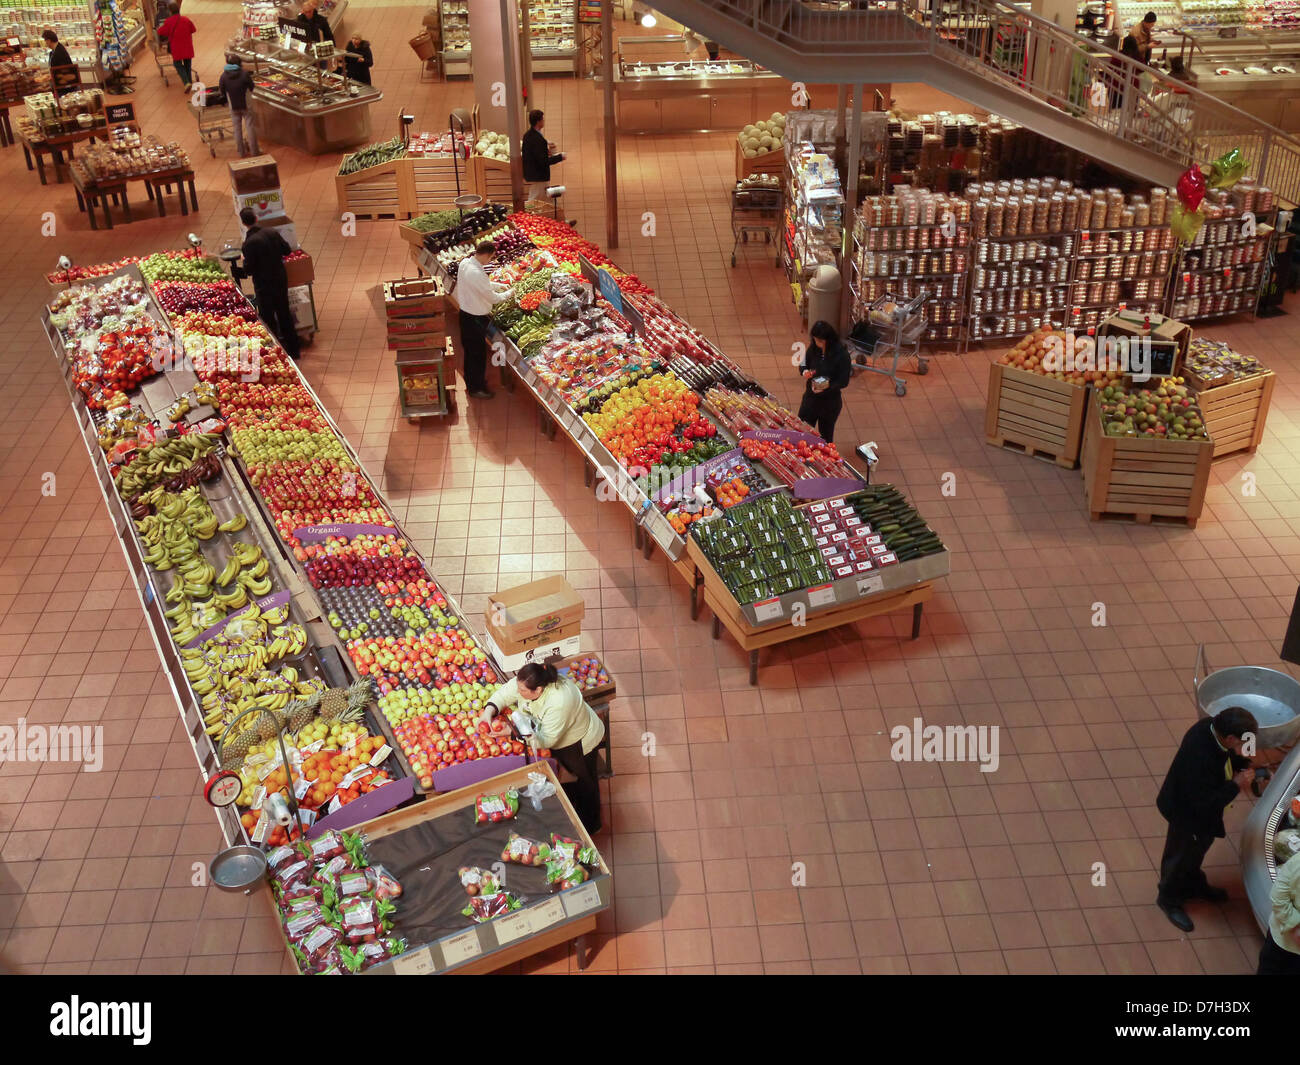 Supermercado supermercado puesto de frutas Foto de stock